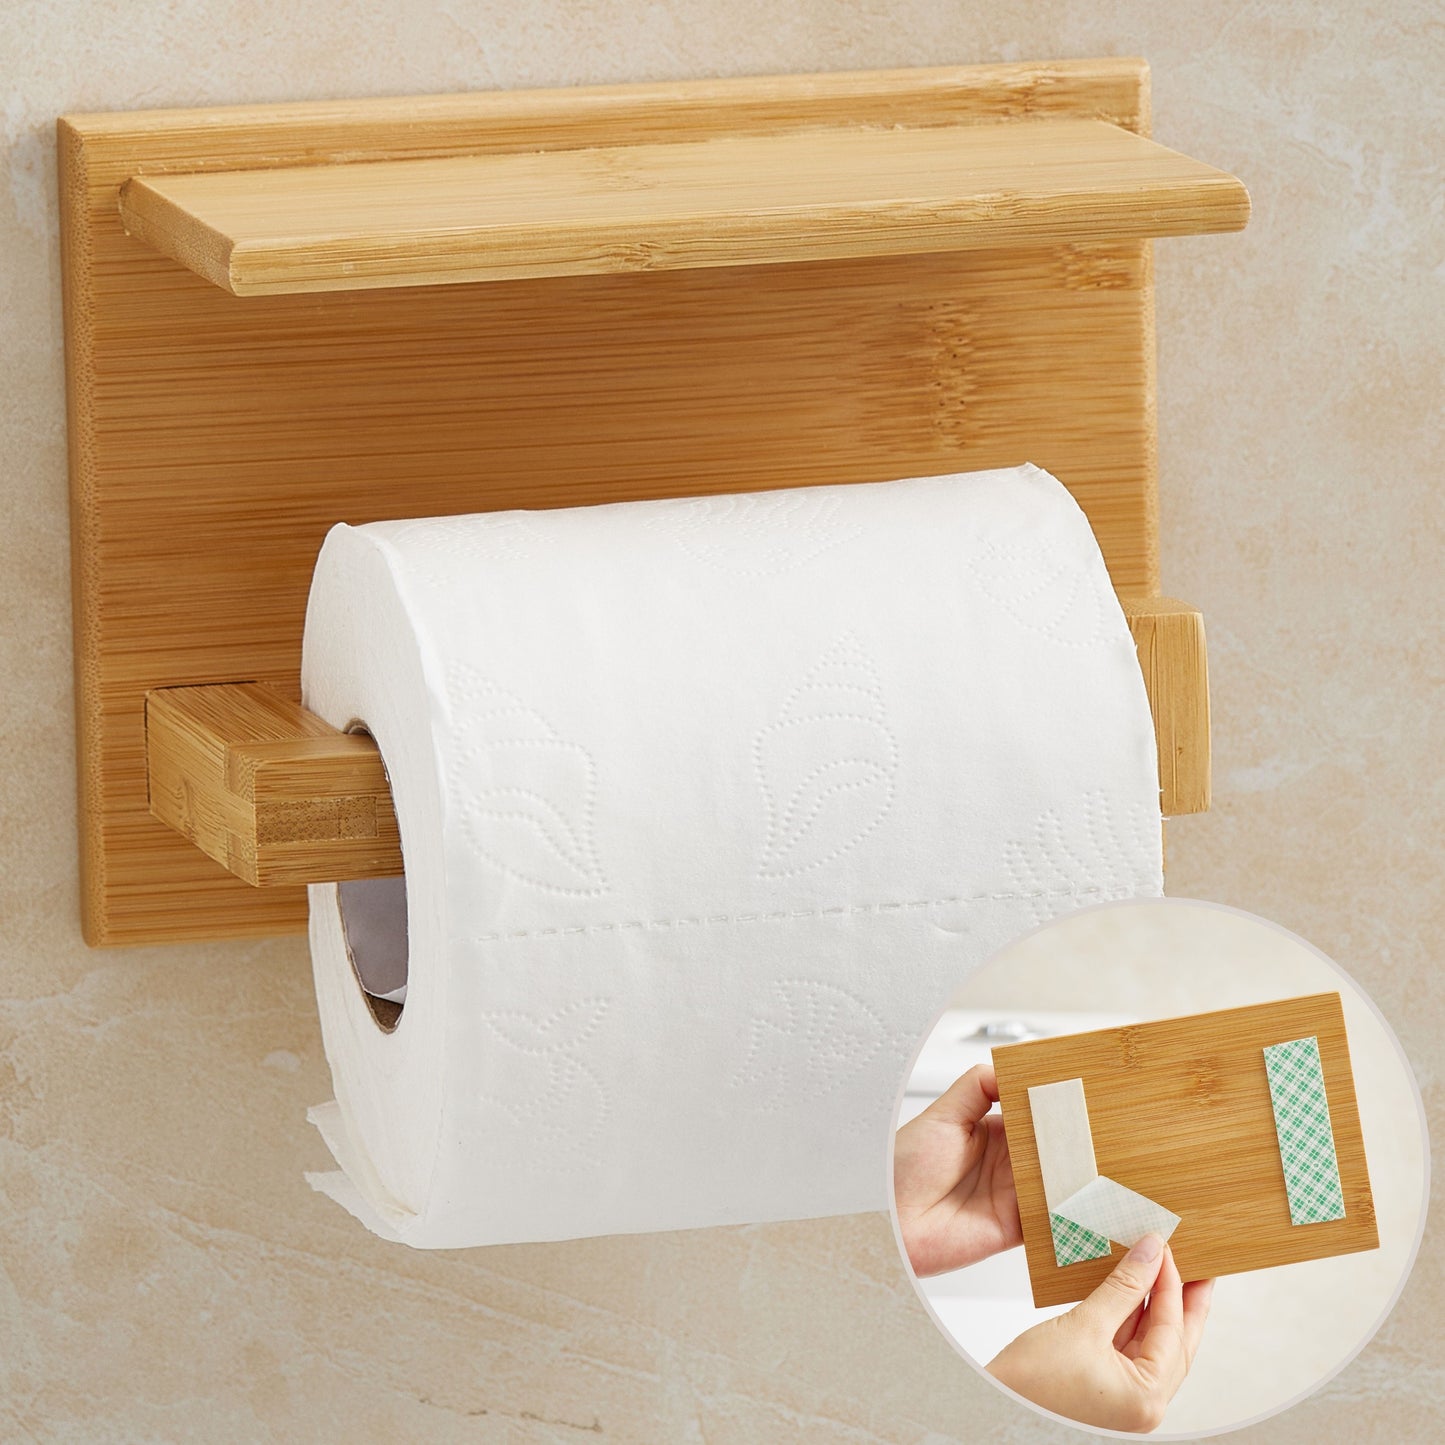 Toilettenpapierhalter aus Holz mit Ablage